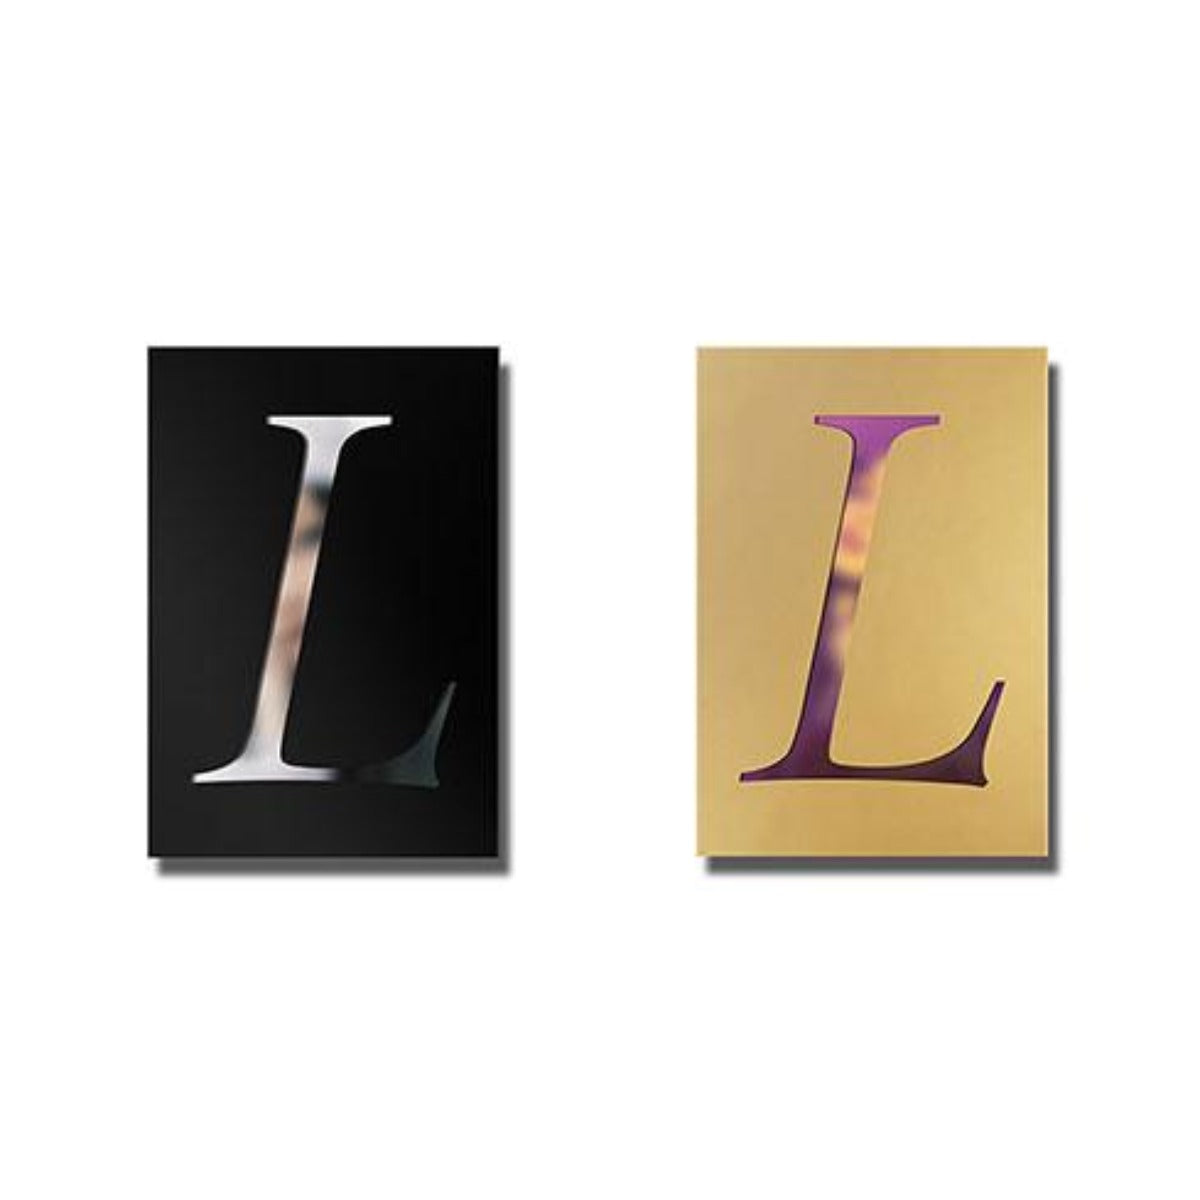 BLACKPINK: Lisa Single Album Vol. 1 - LALISA